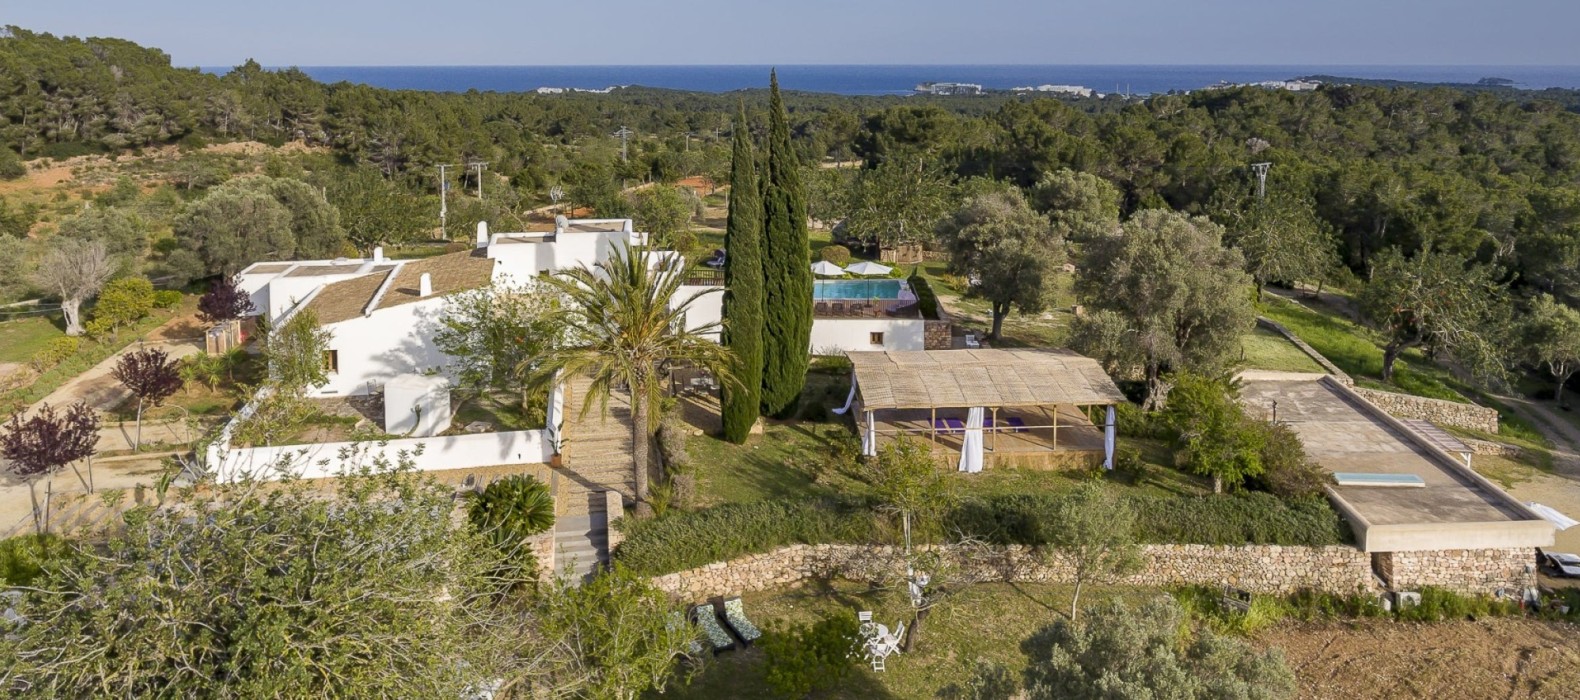 Exterior villa view of Villa Feel Home in Ibiza